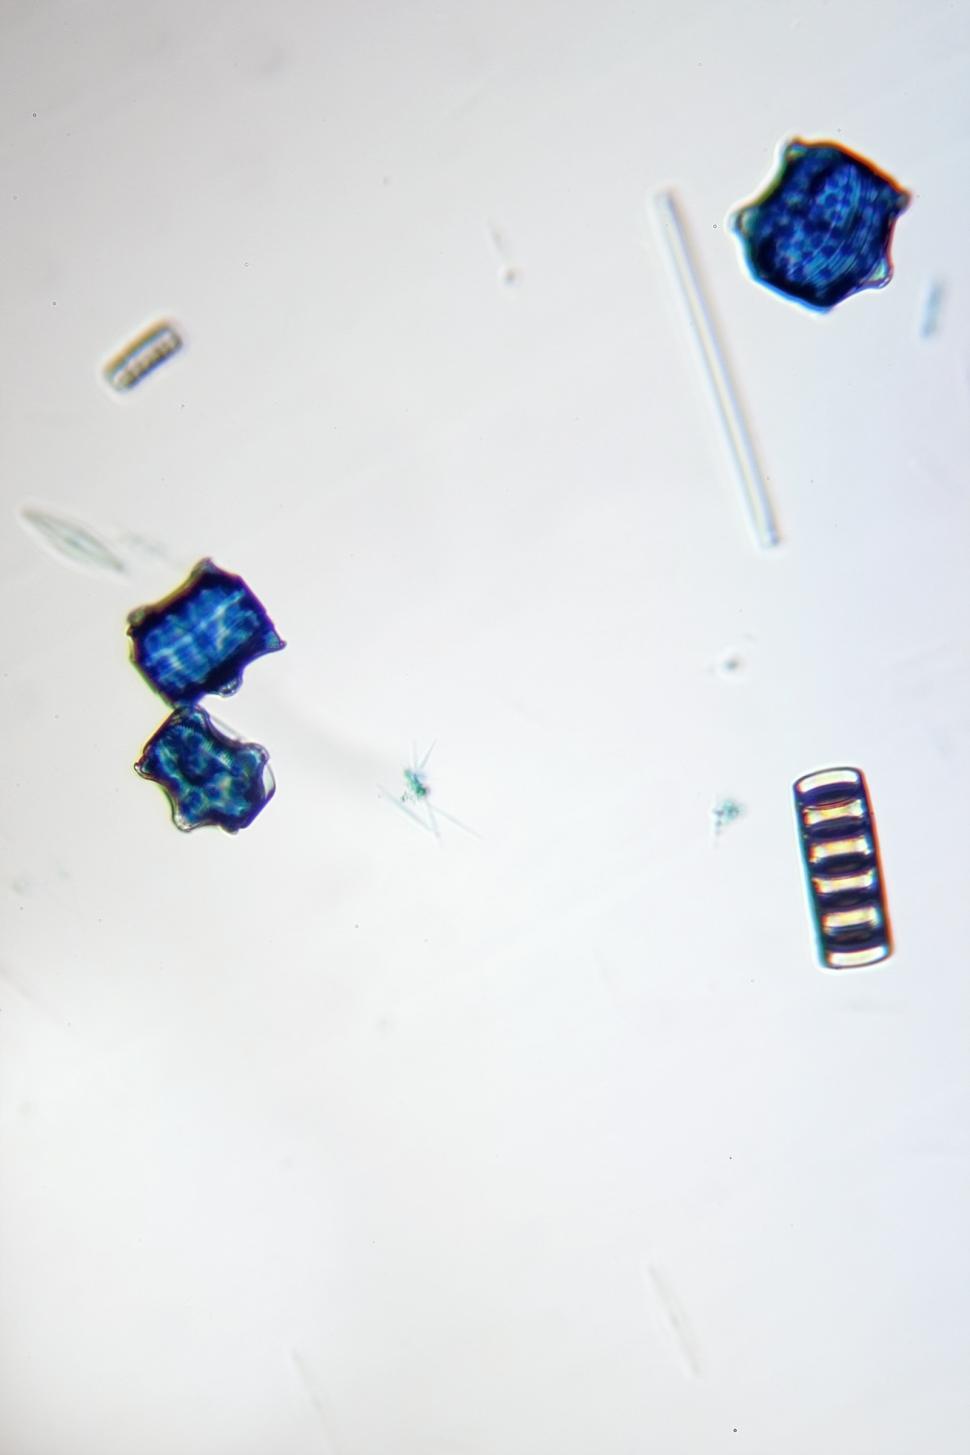 Free Image of Diatoms 